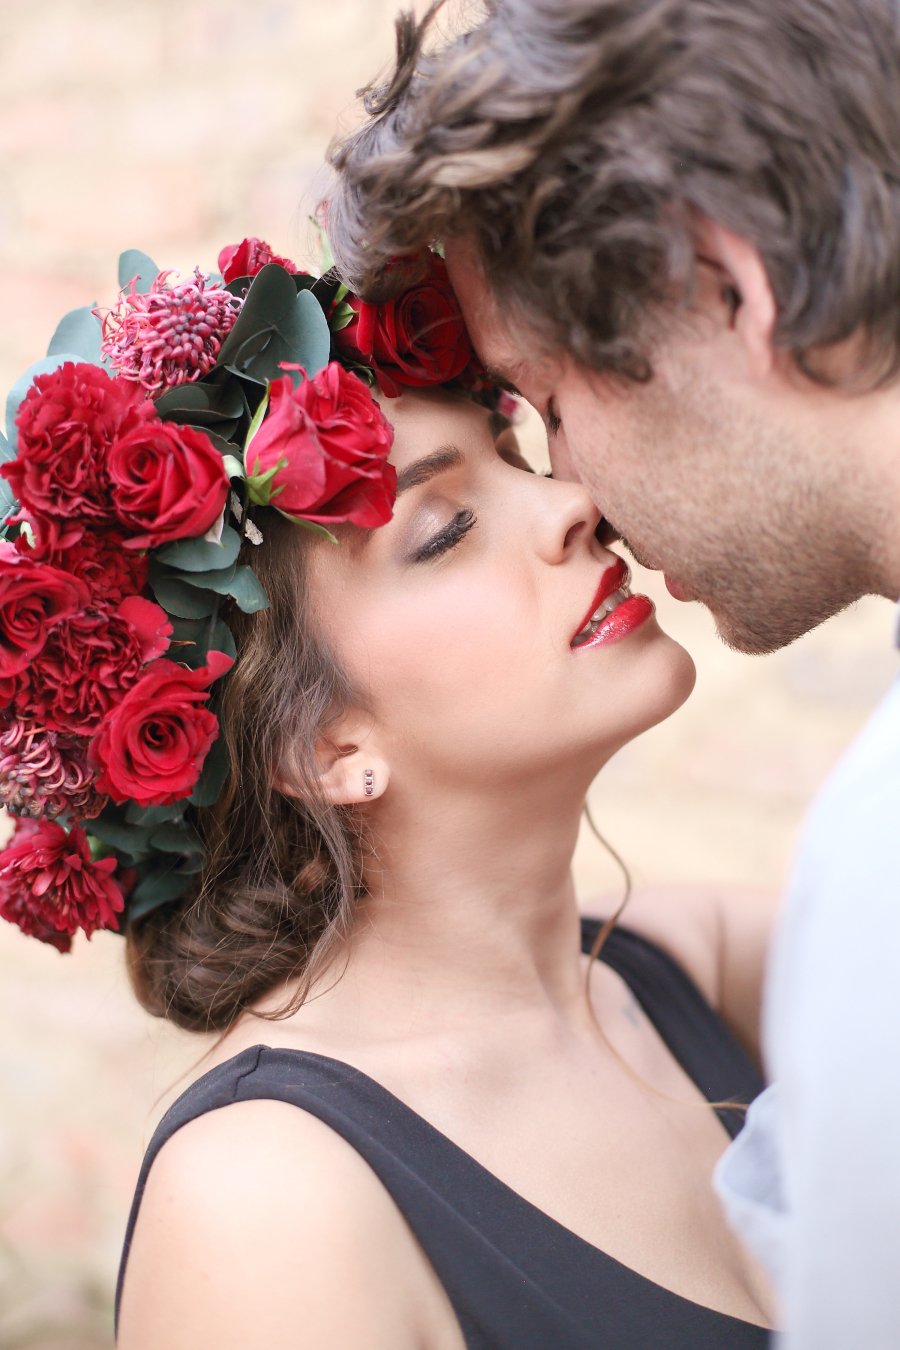 Kiss flowers. Цветок поцелуй. Поцелуй с цветами. Романтичные цветы. Красивые романтичные цветы.